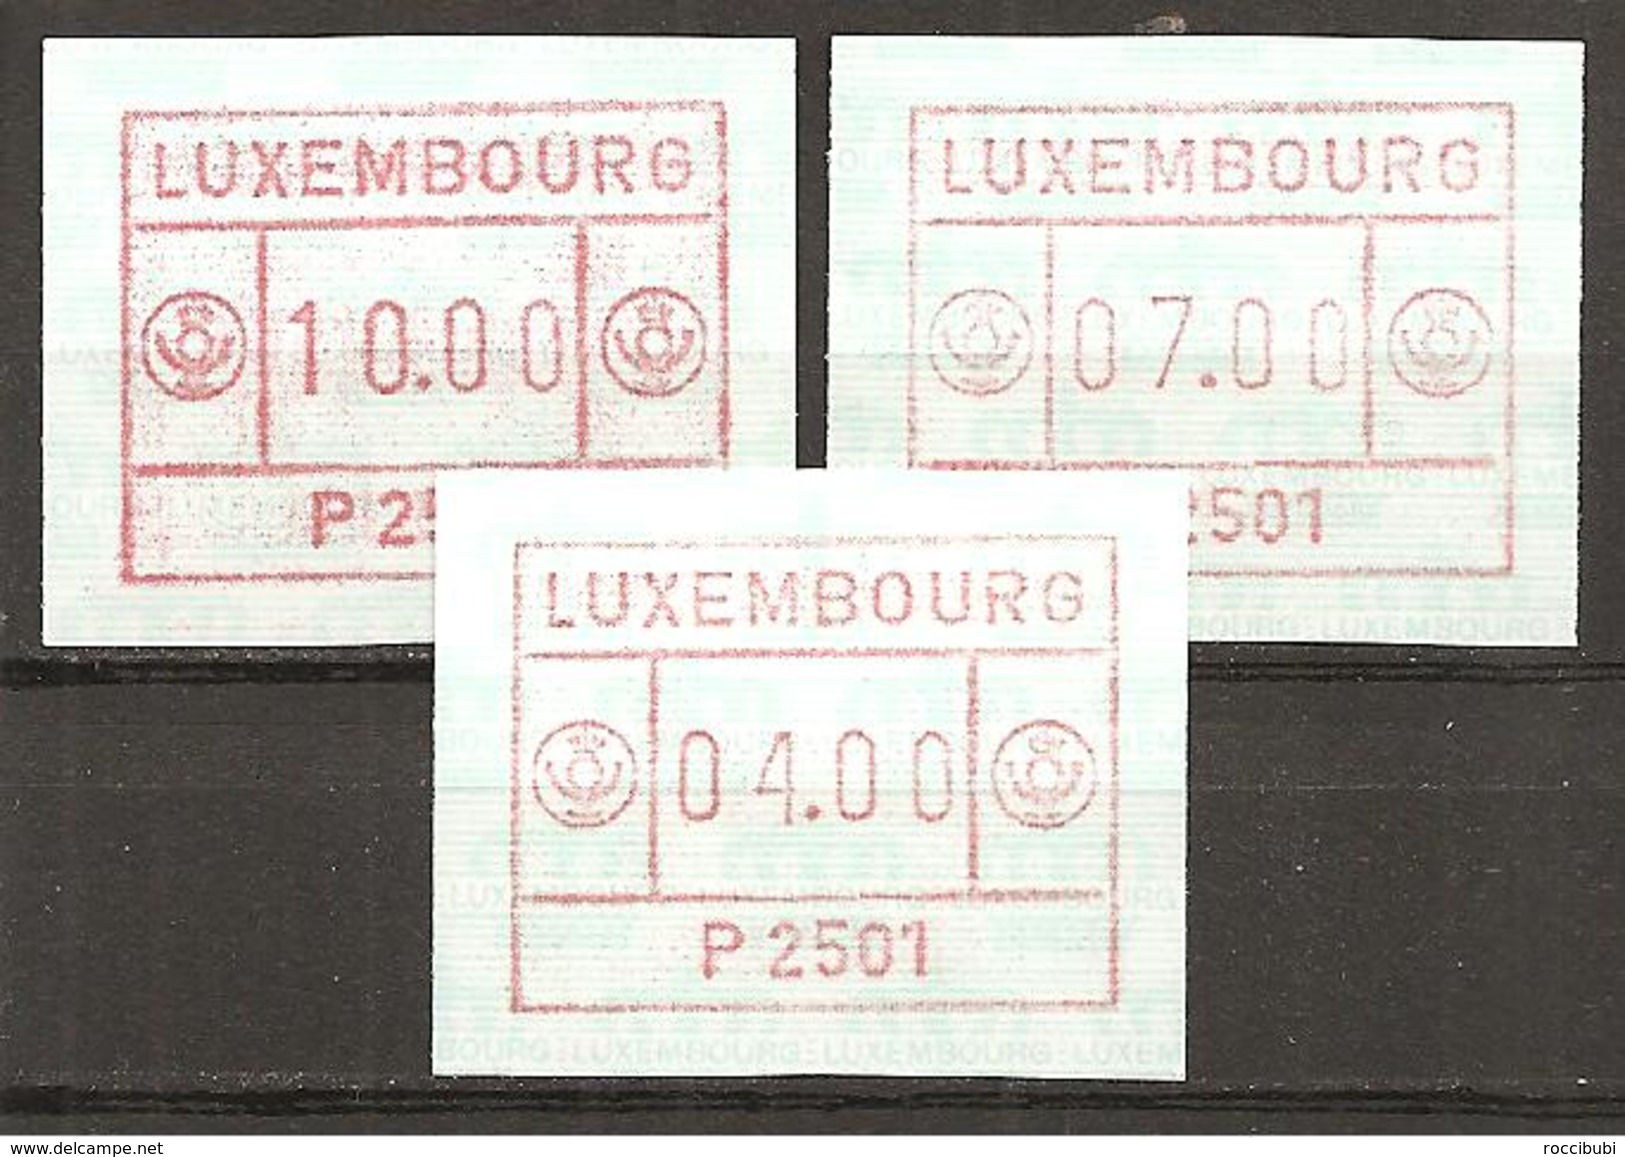 Luxemburg 1983 // Michel ATM 1 ** - Vignettes D'affranchissement